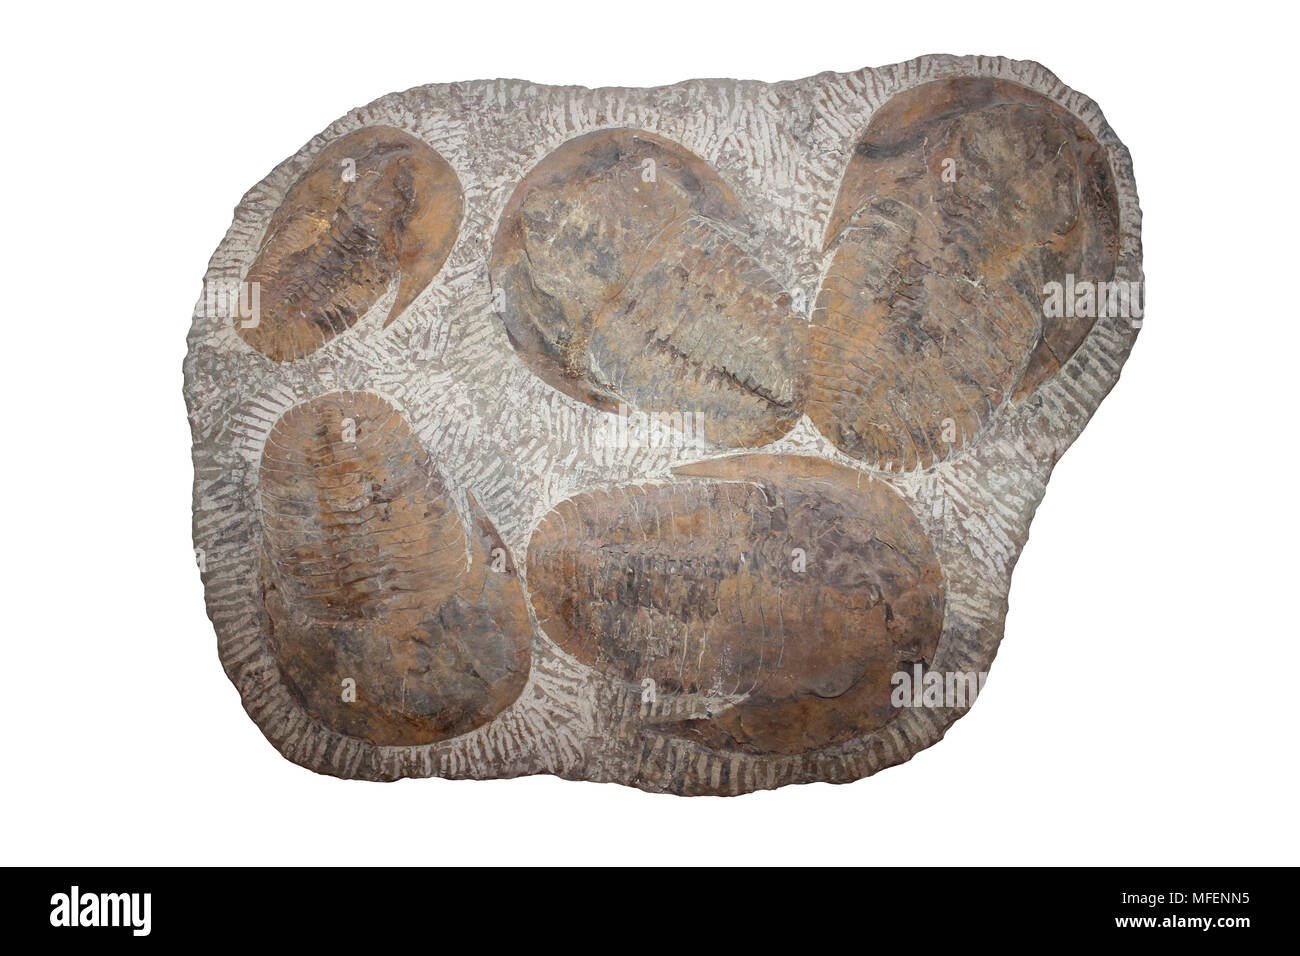 Trilobite Plate - Cambropallas sp. Cambrian Period, Morocco Stock Photo